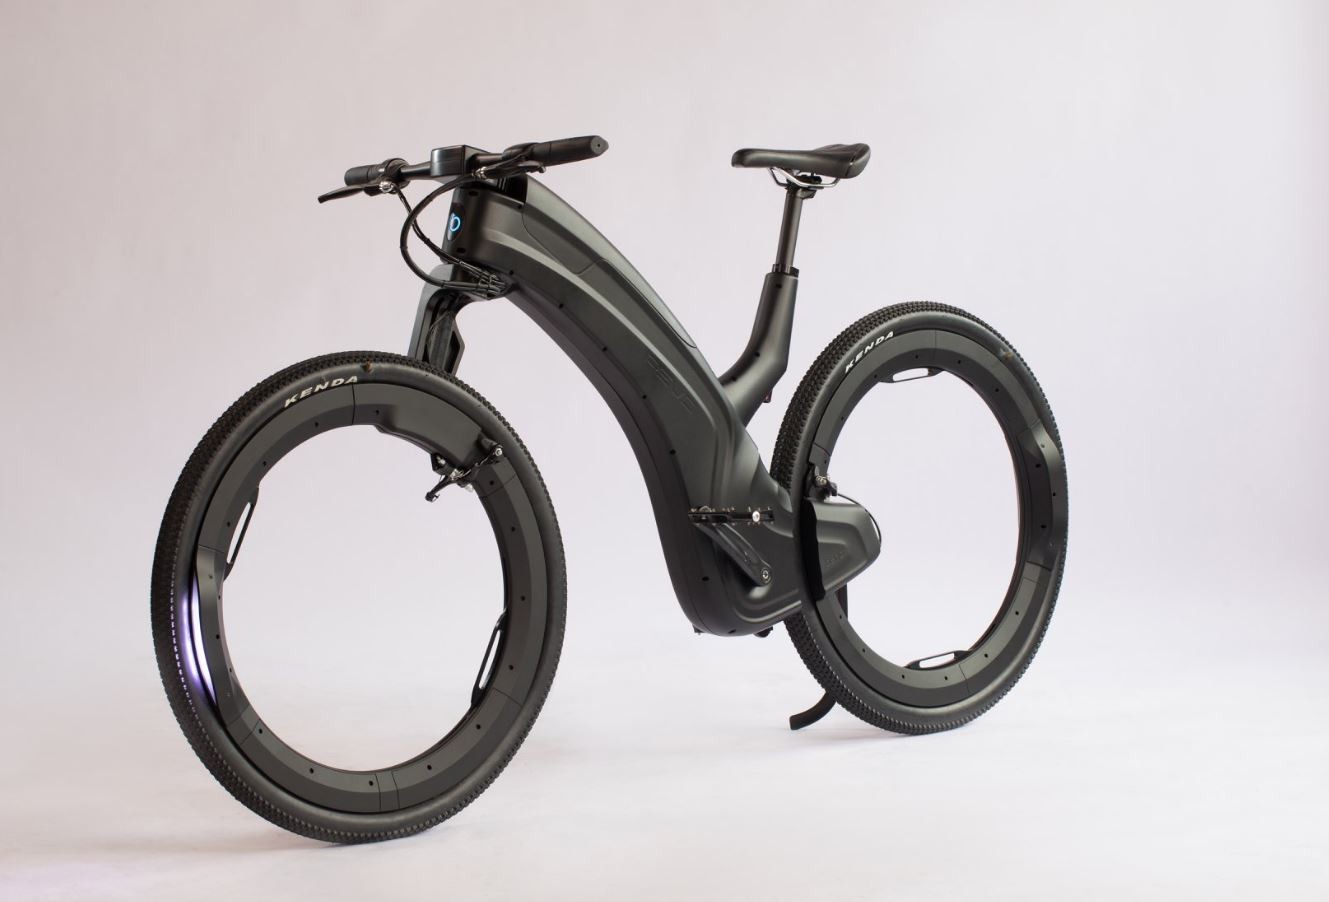 Spokeless bike wheel